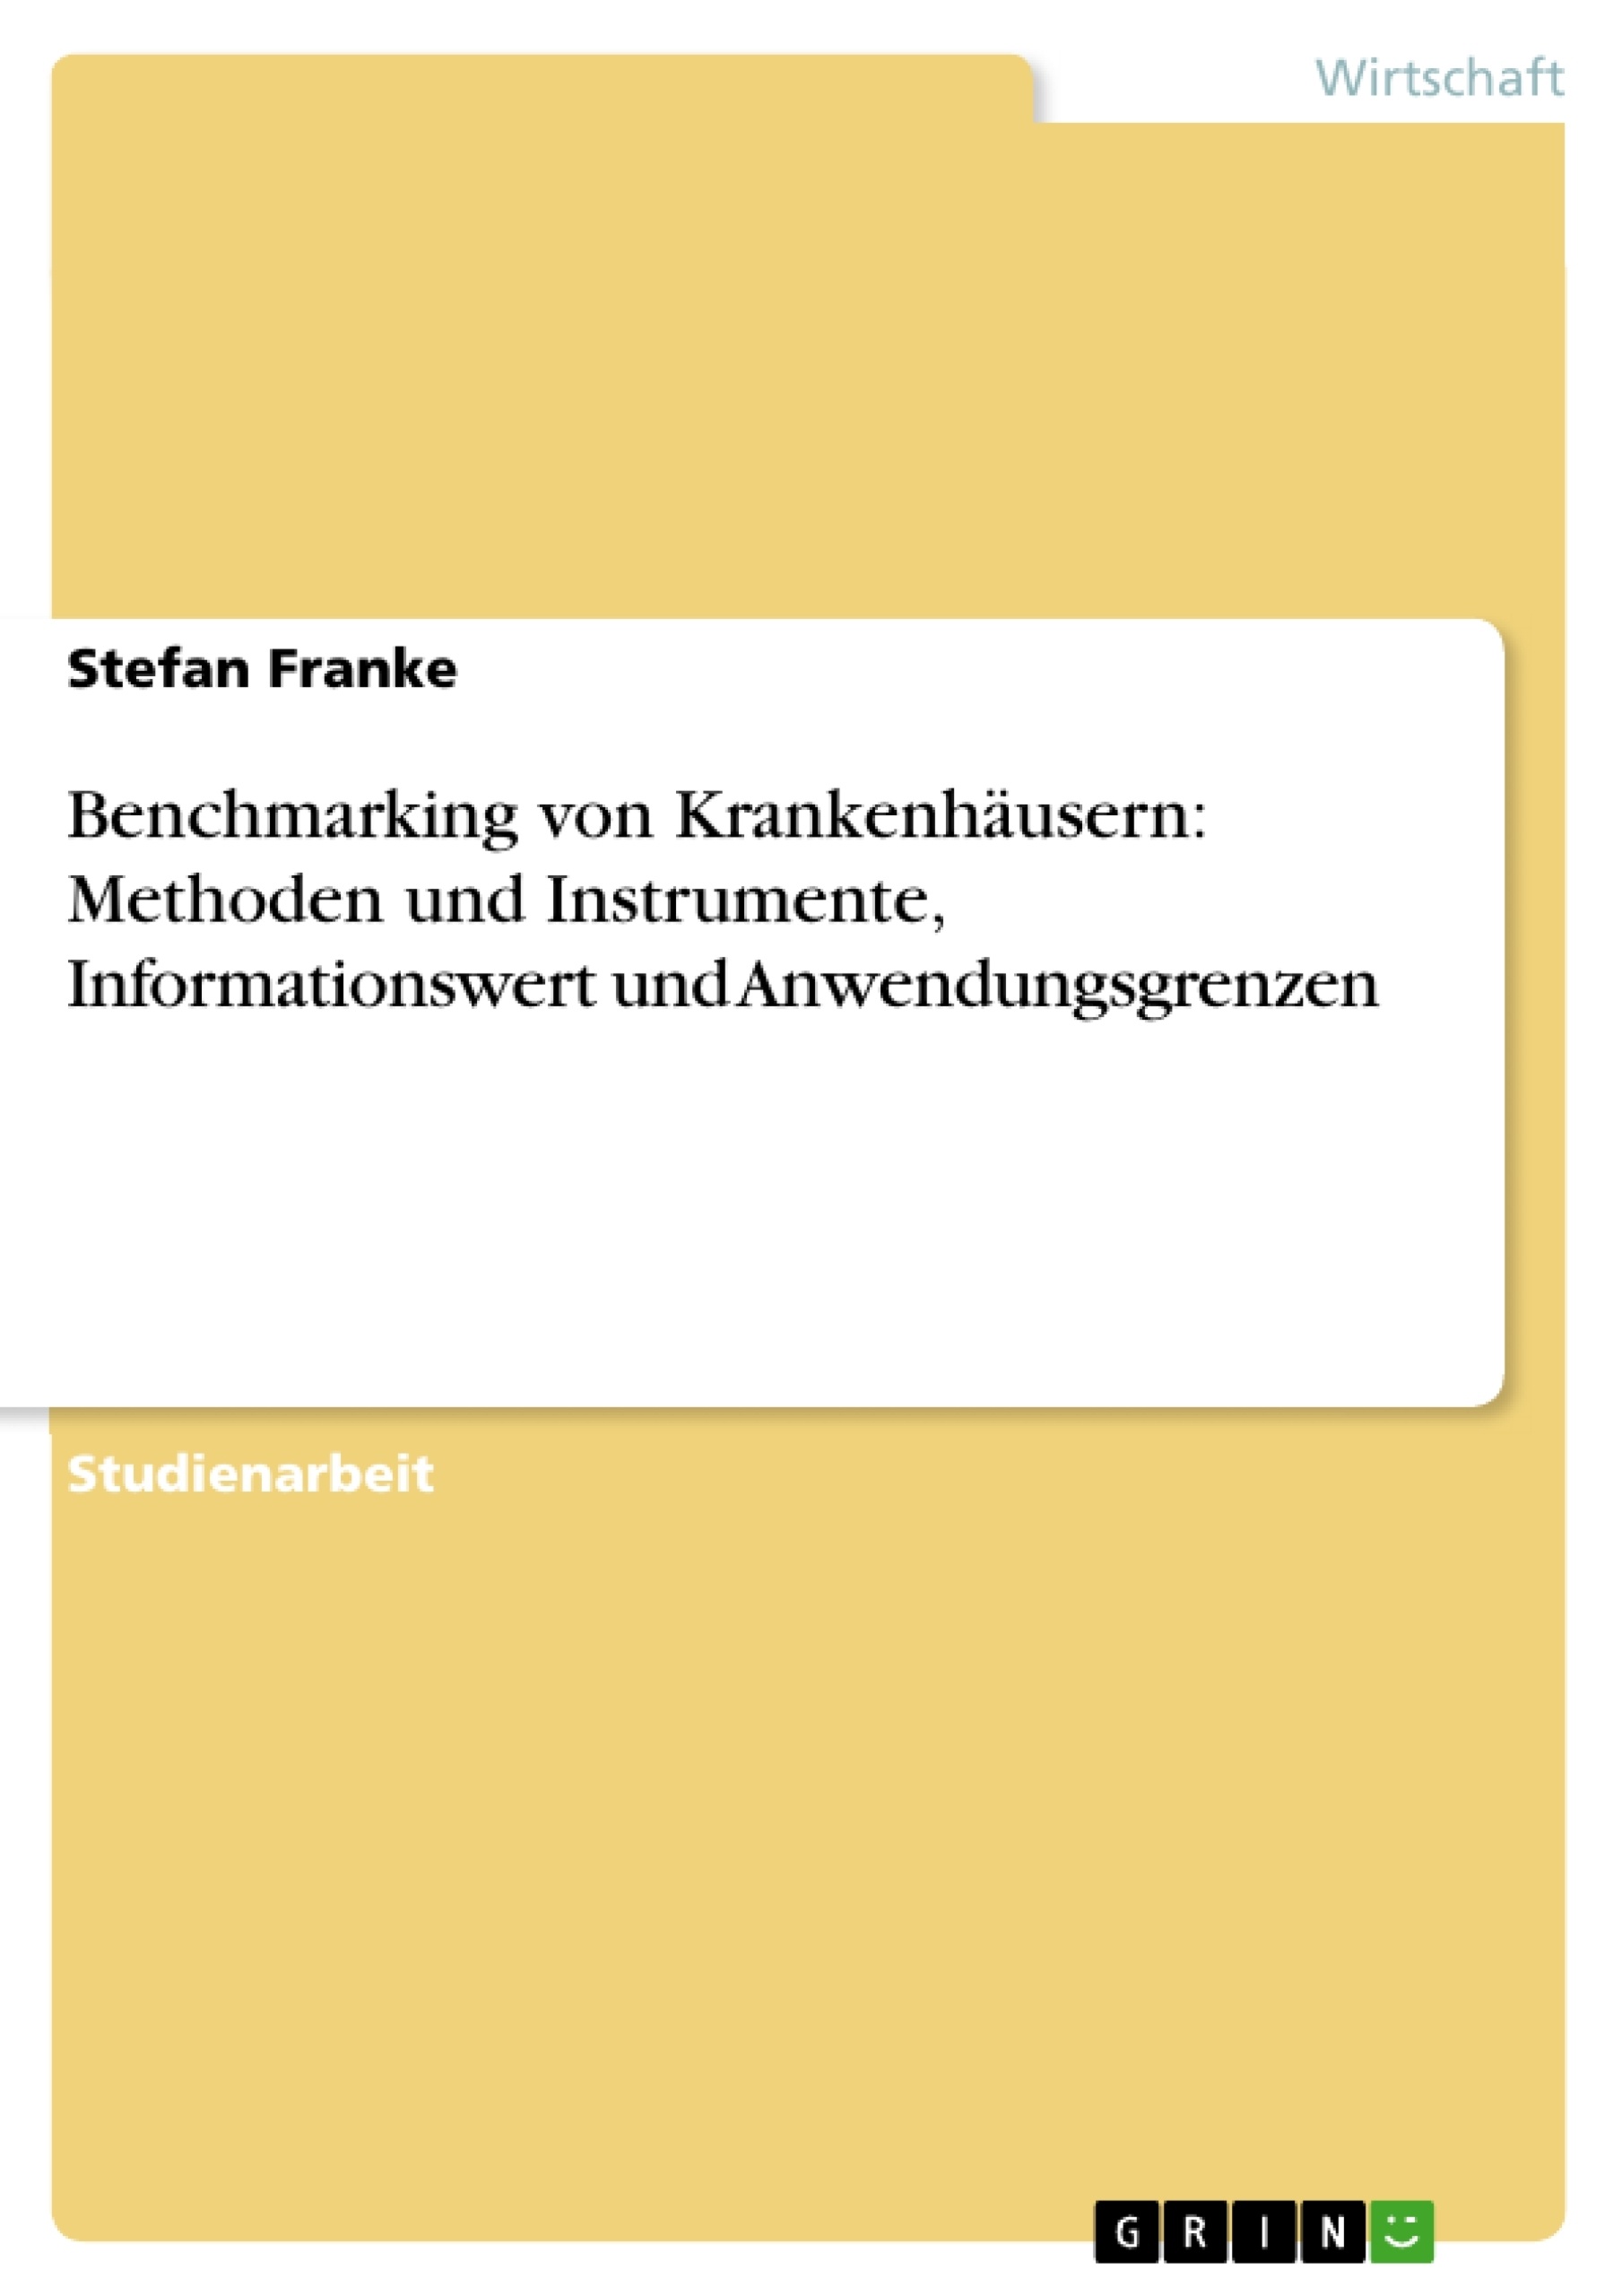 Title: Benchmarking von Krankenhäusern: Methoden und Instrumente, Informationswert und Anwendungsgrenzen